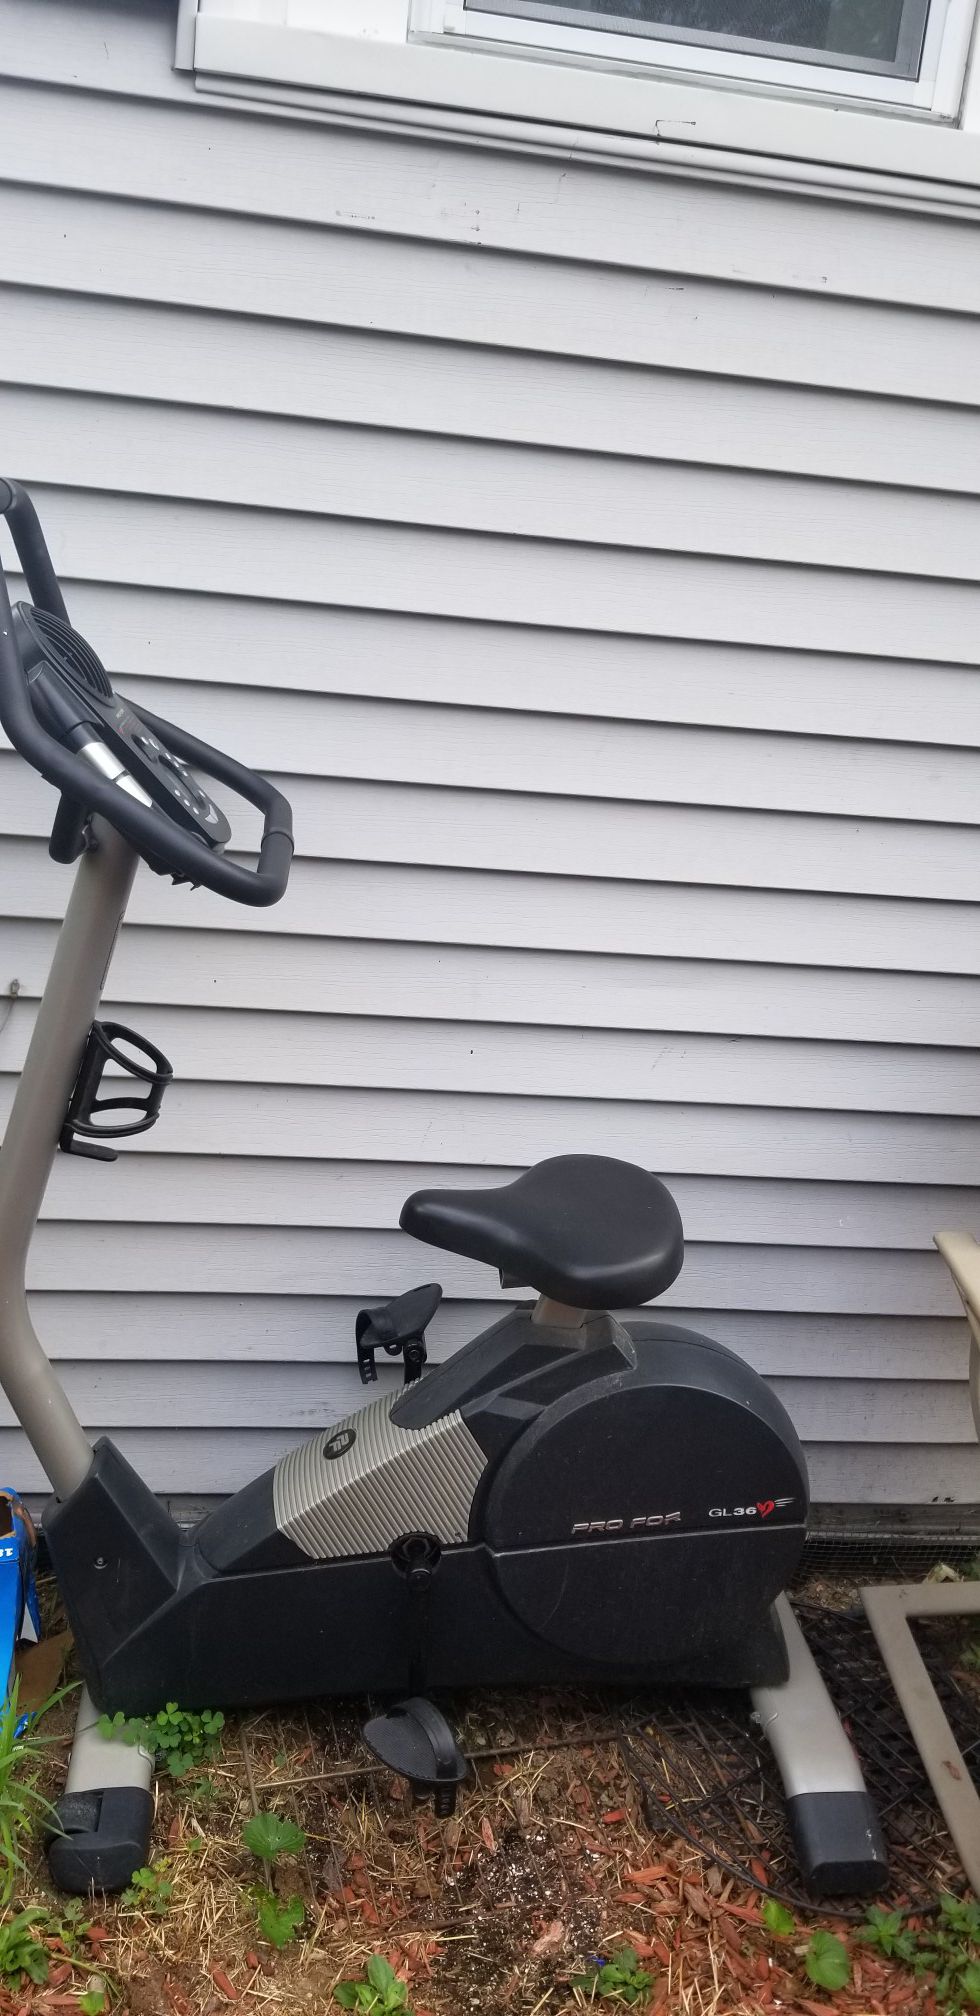 Exercise bike pro for GL36♡ $30